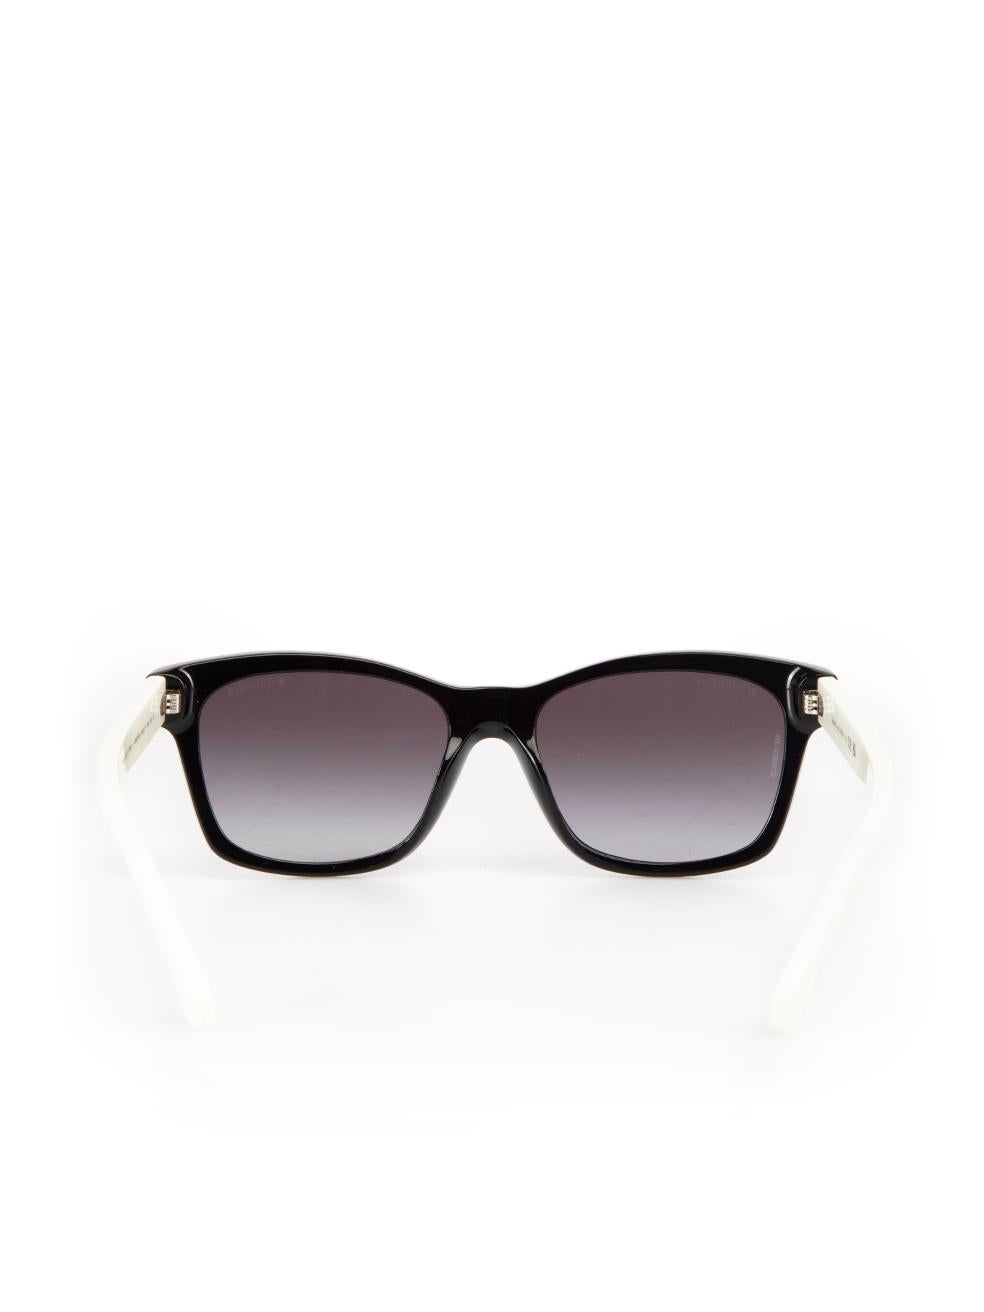 Women's Chanel Black & White Square Sunglasses For Sale